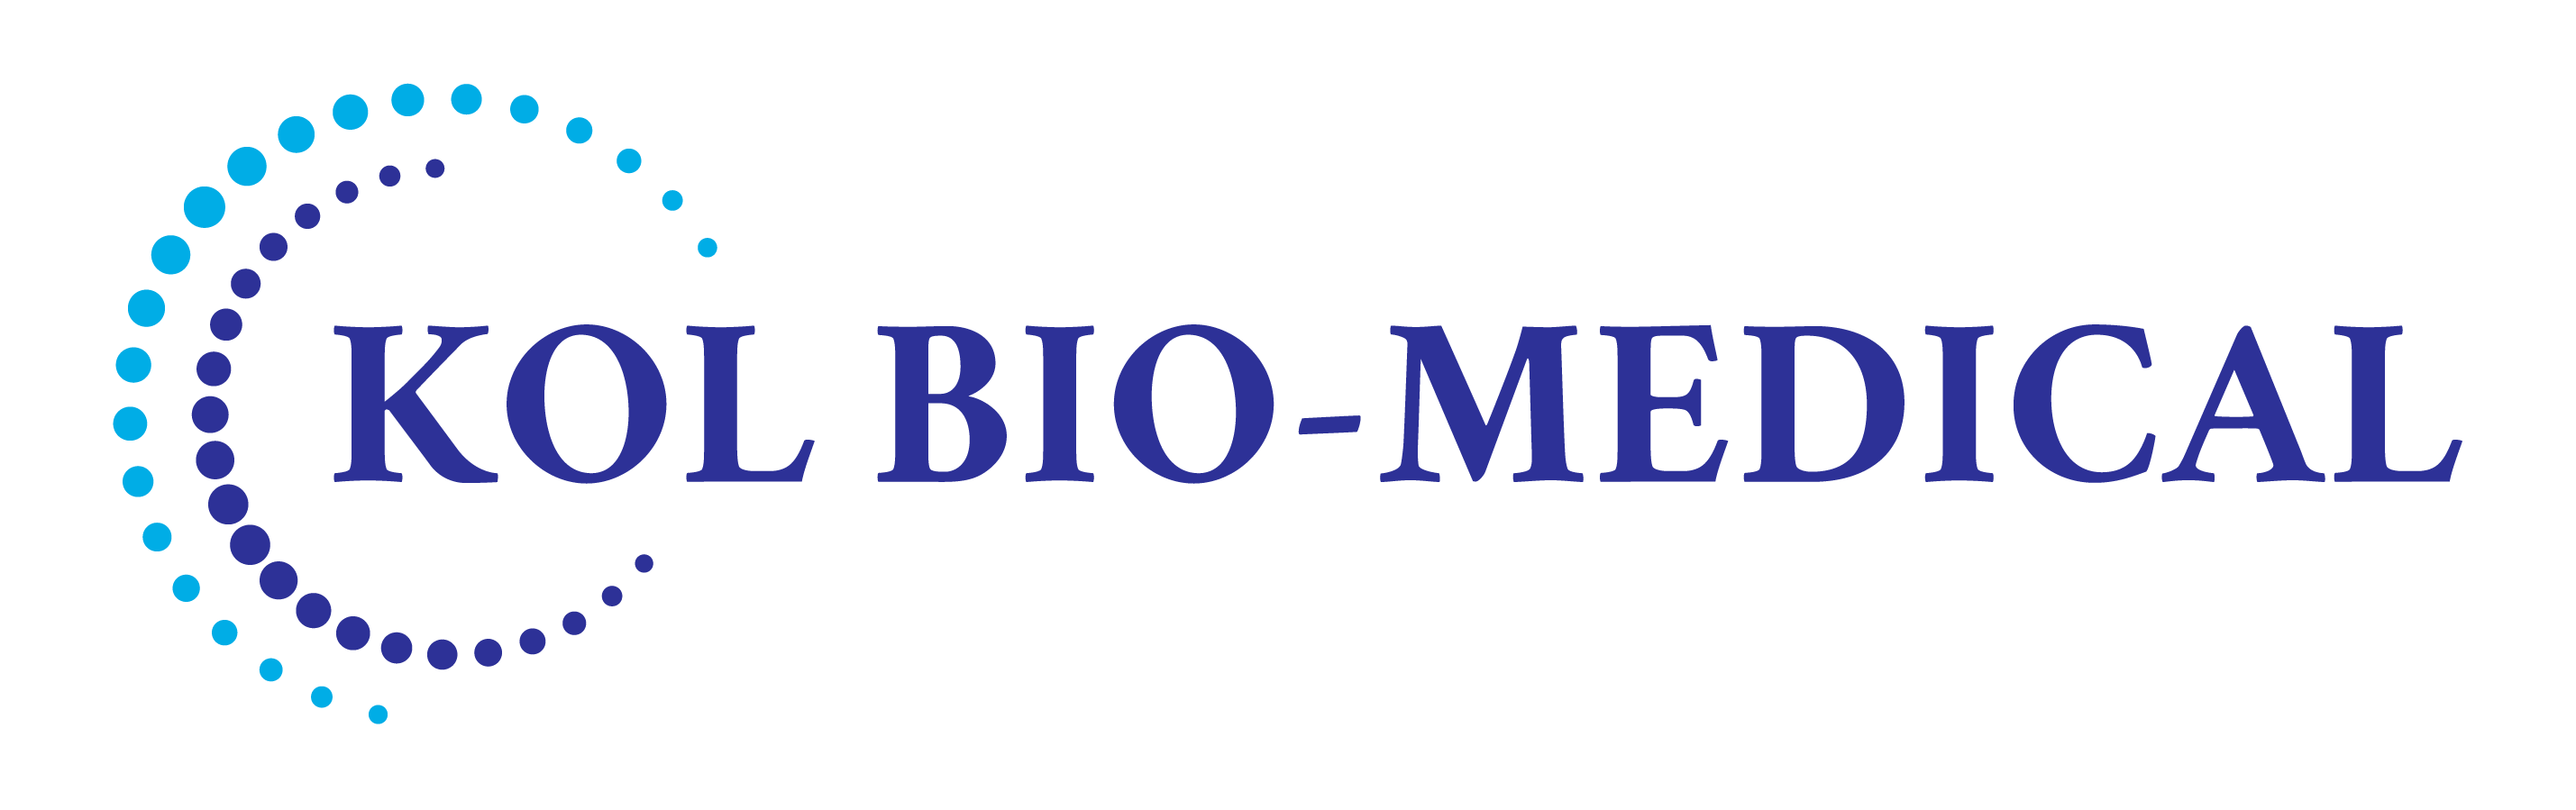 Kol Bio-Medical